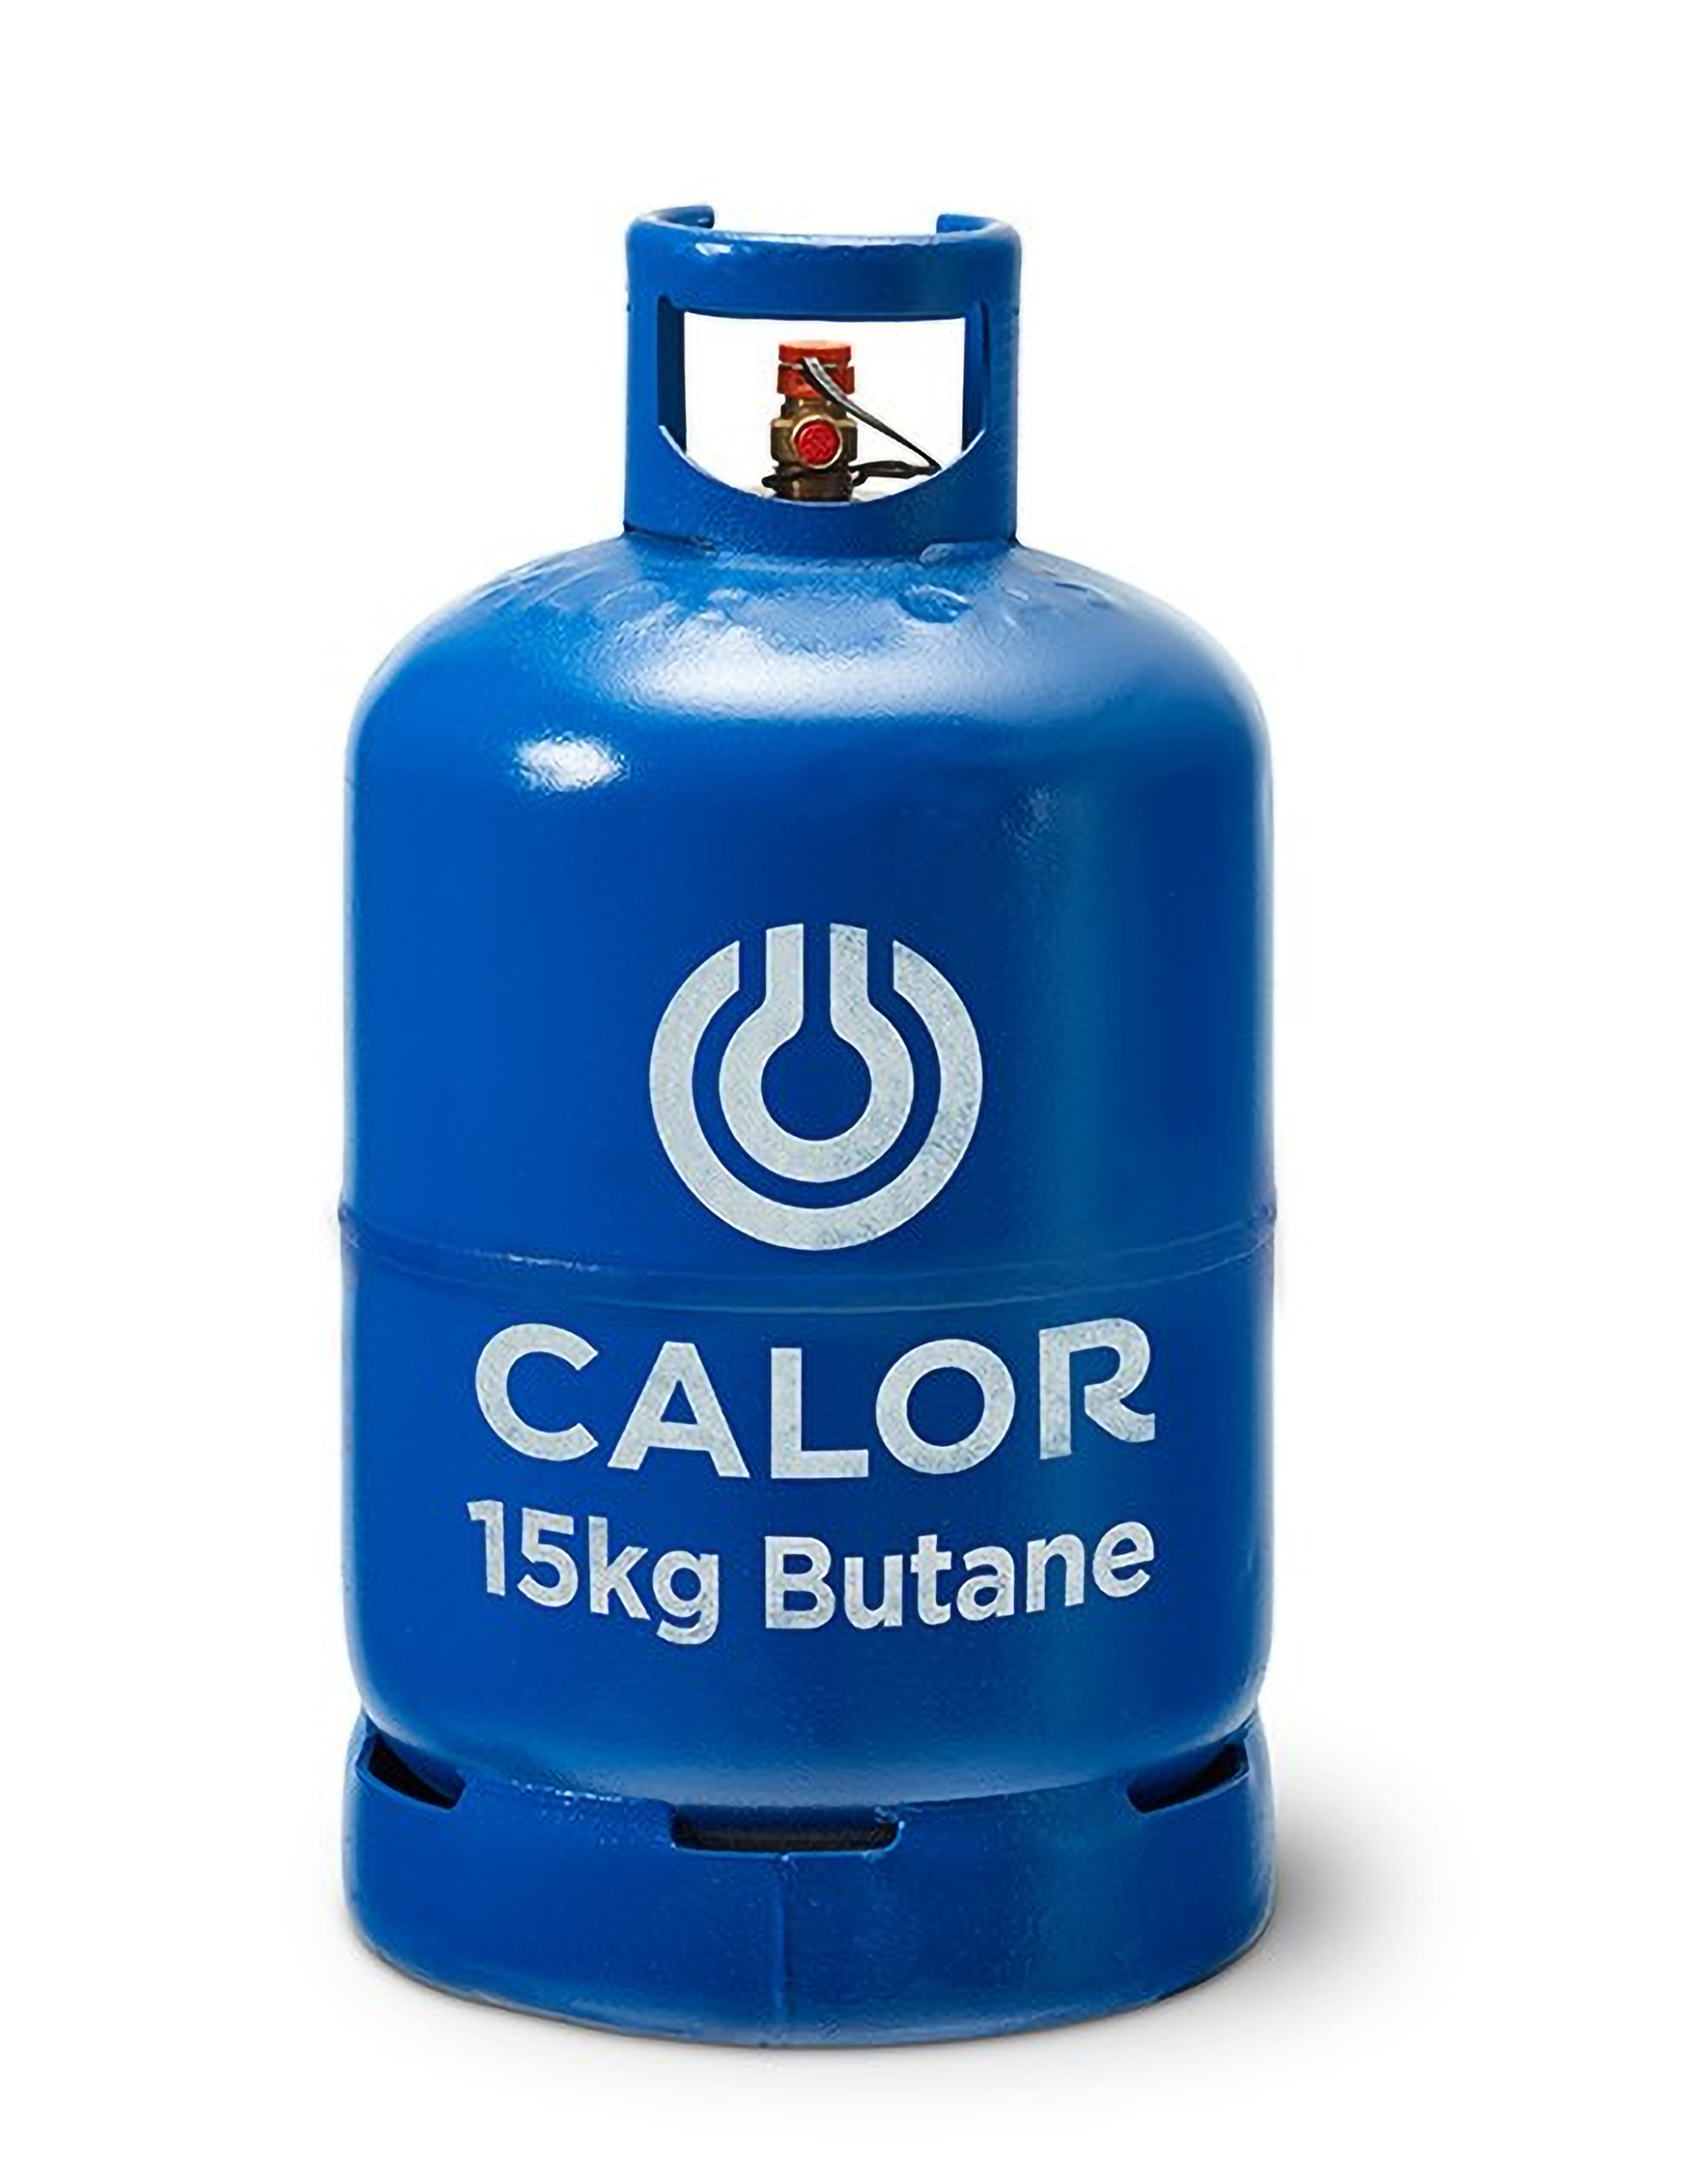 15kg butane gas bottle